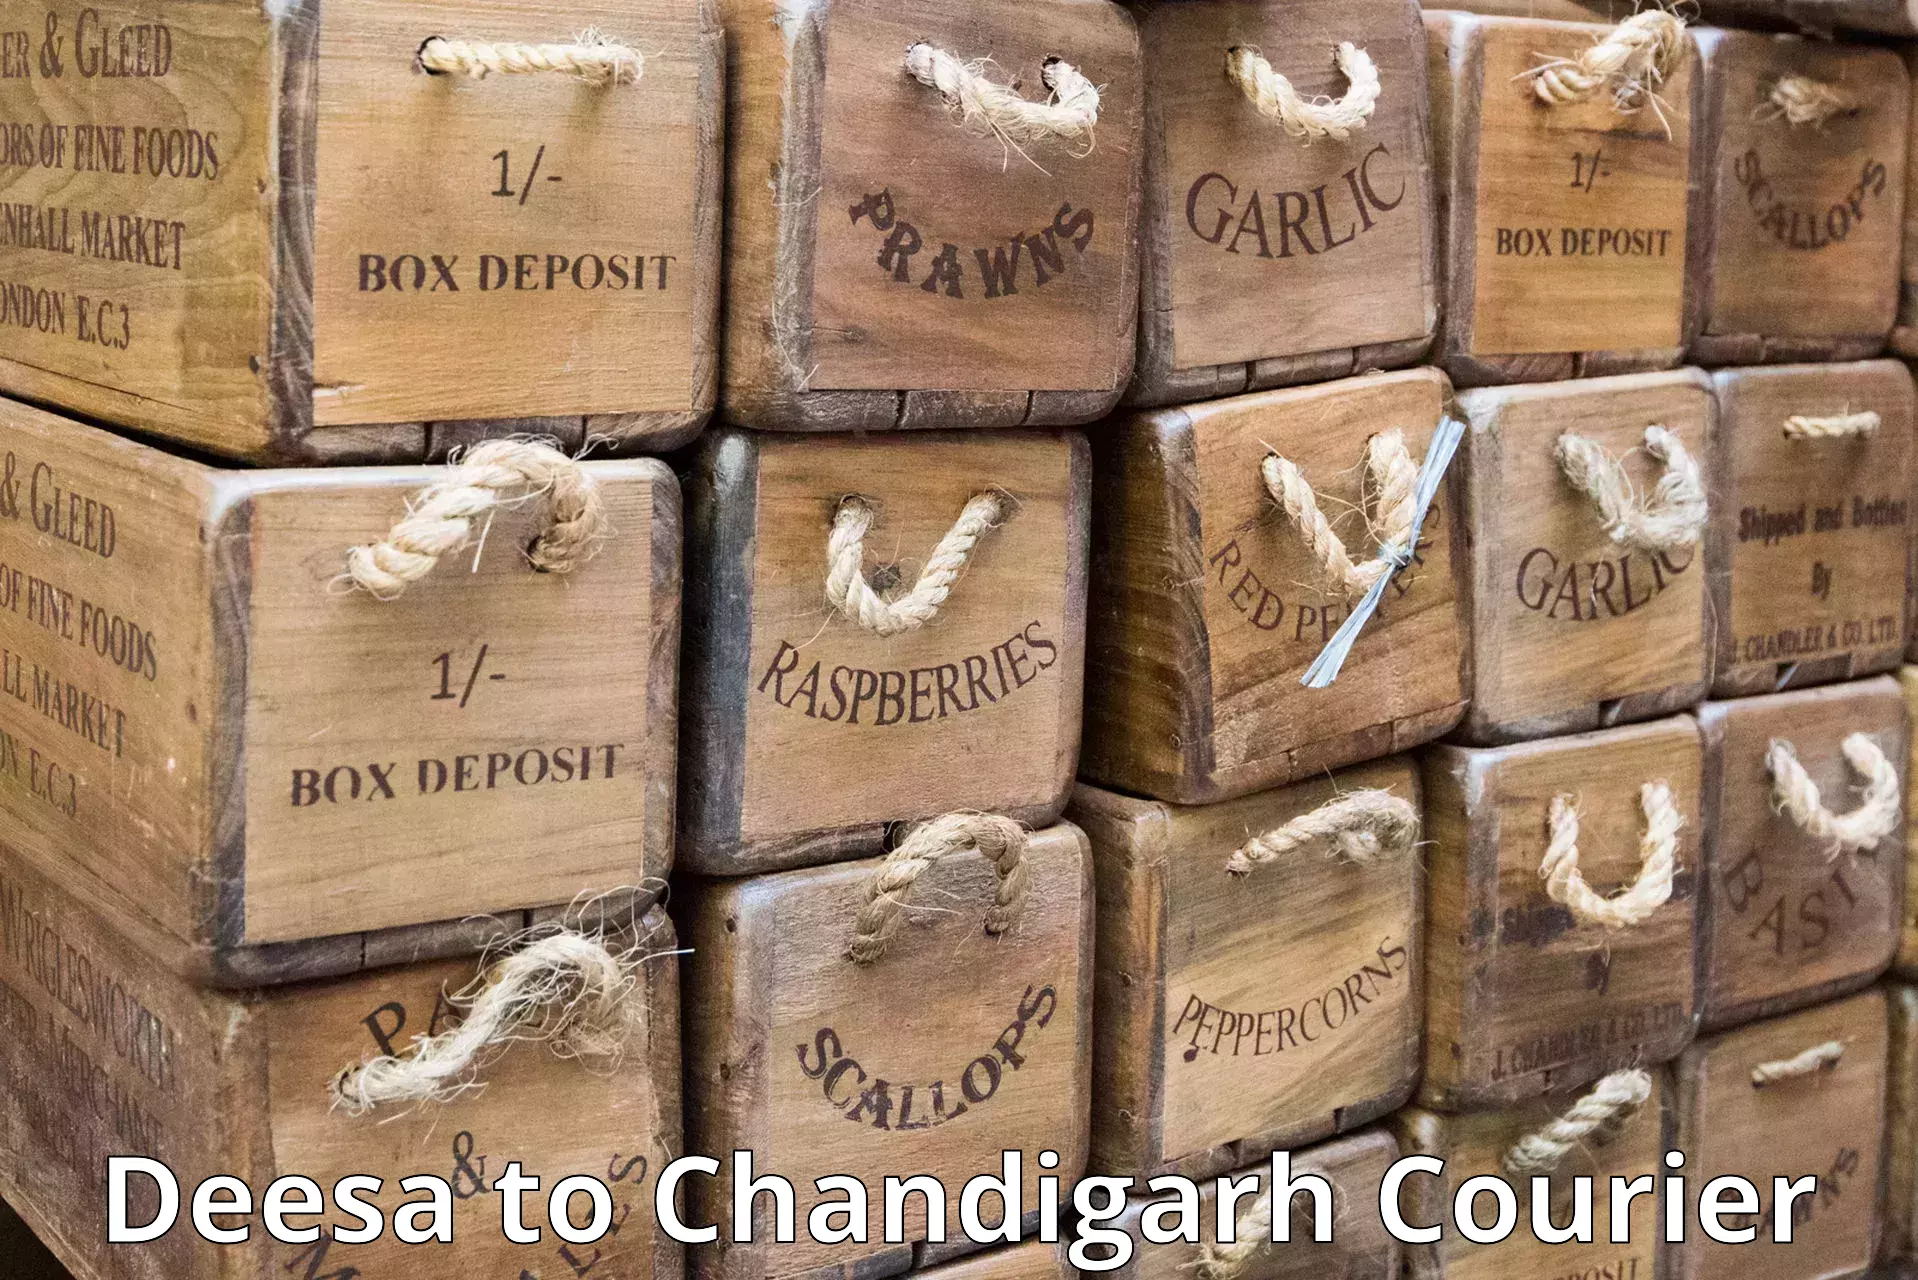 Ocean freight courier Deesa to Chandigarh